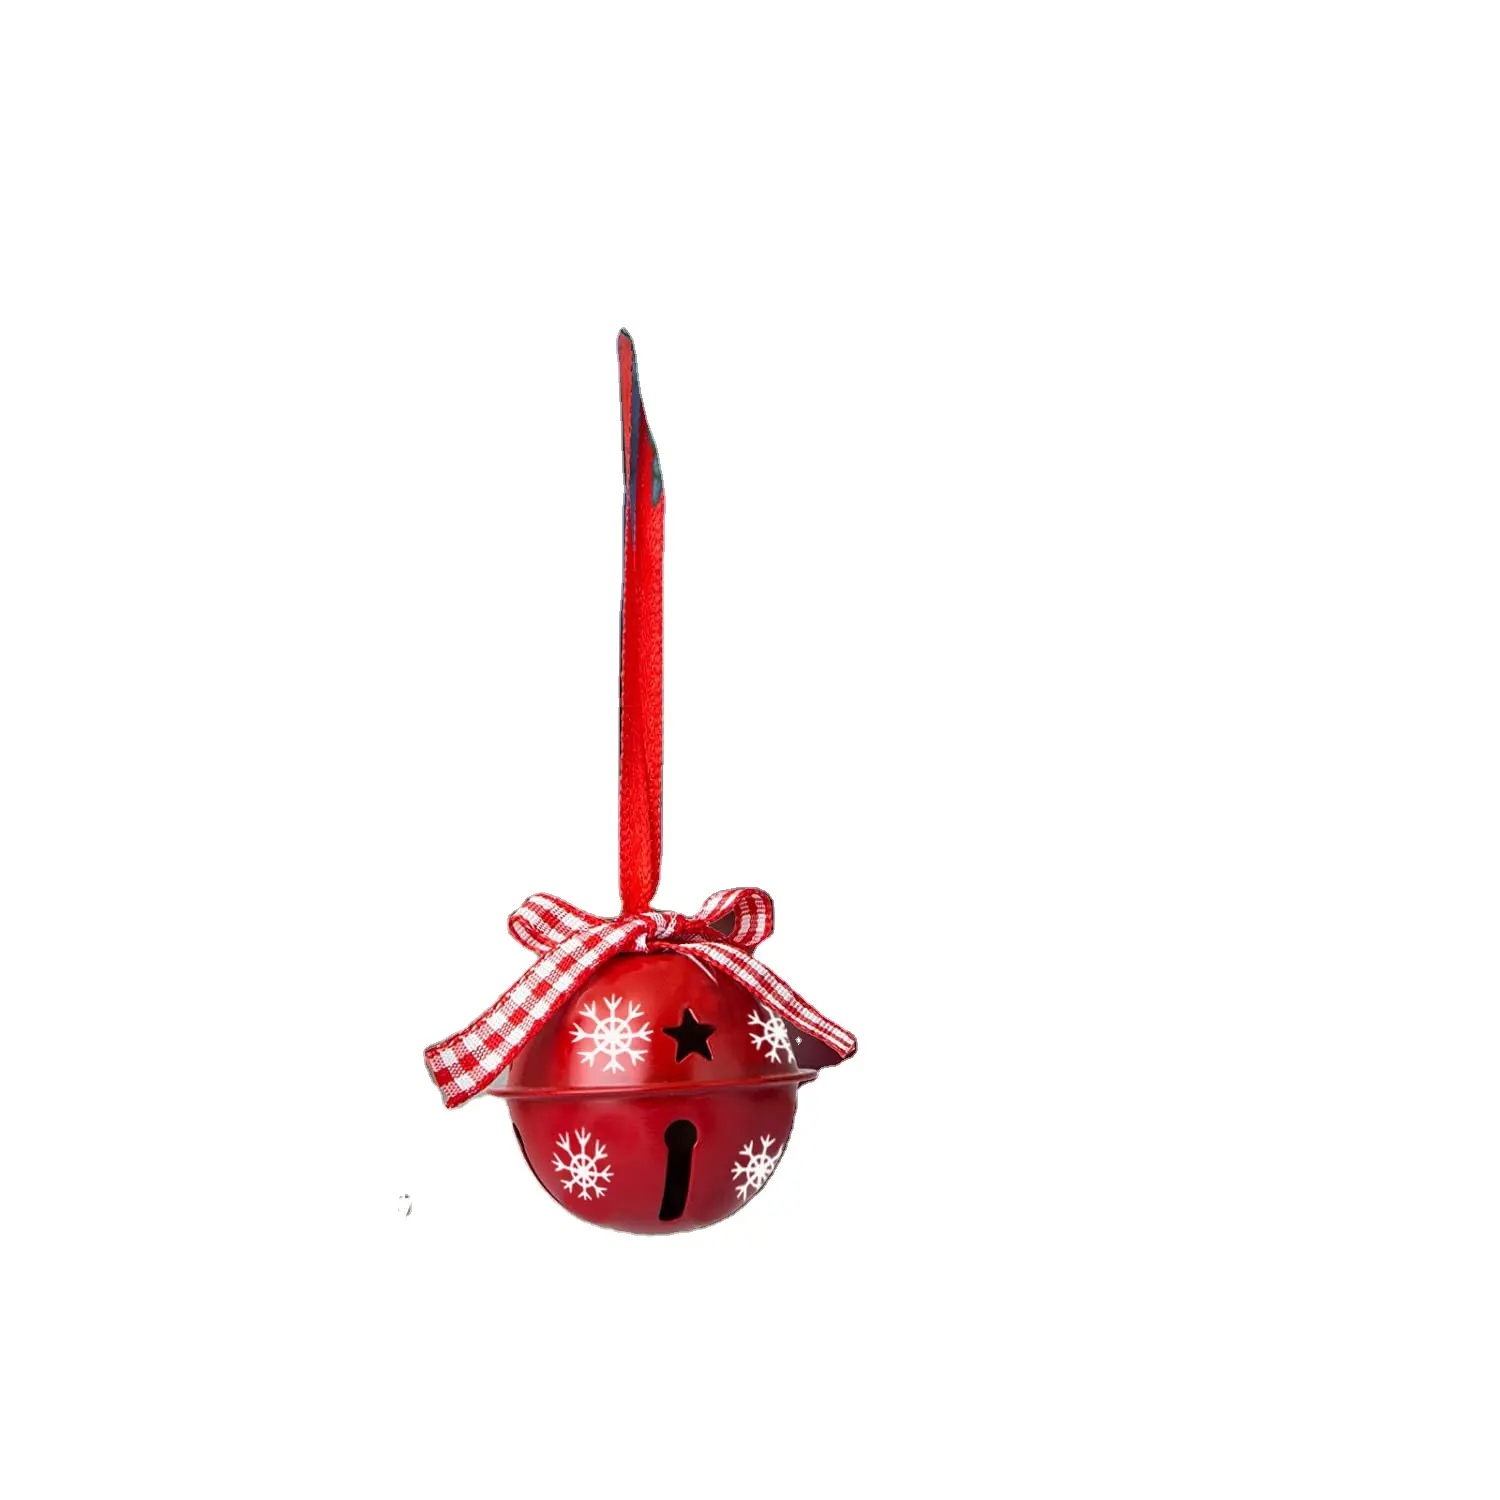 クリスマスベルクラフトペンダントホリデークリスマスツリーデコレーション4CMメタルベルペンダントセットクリスマスデコレーション用